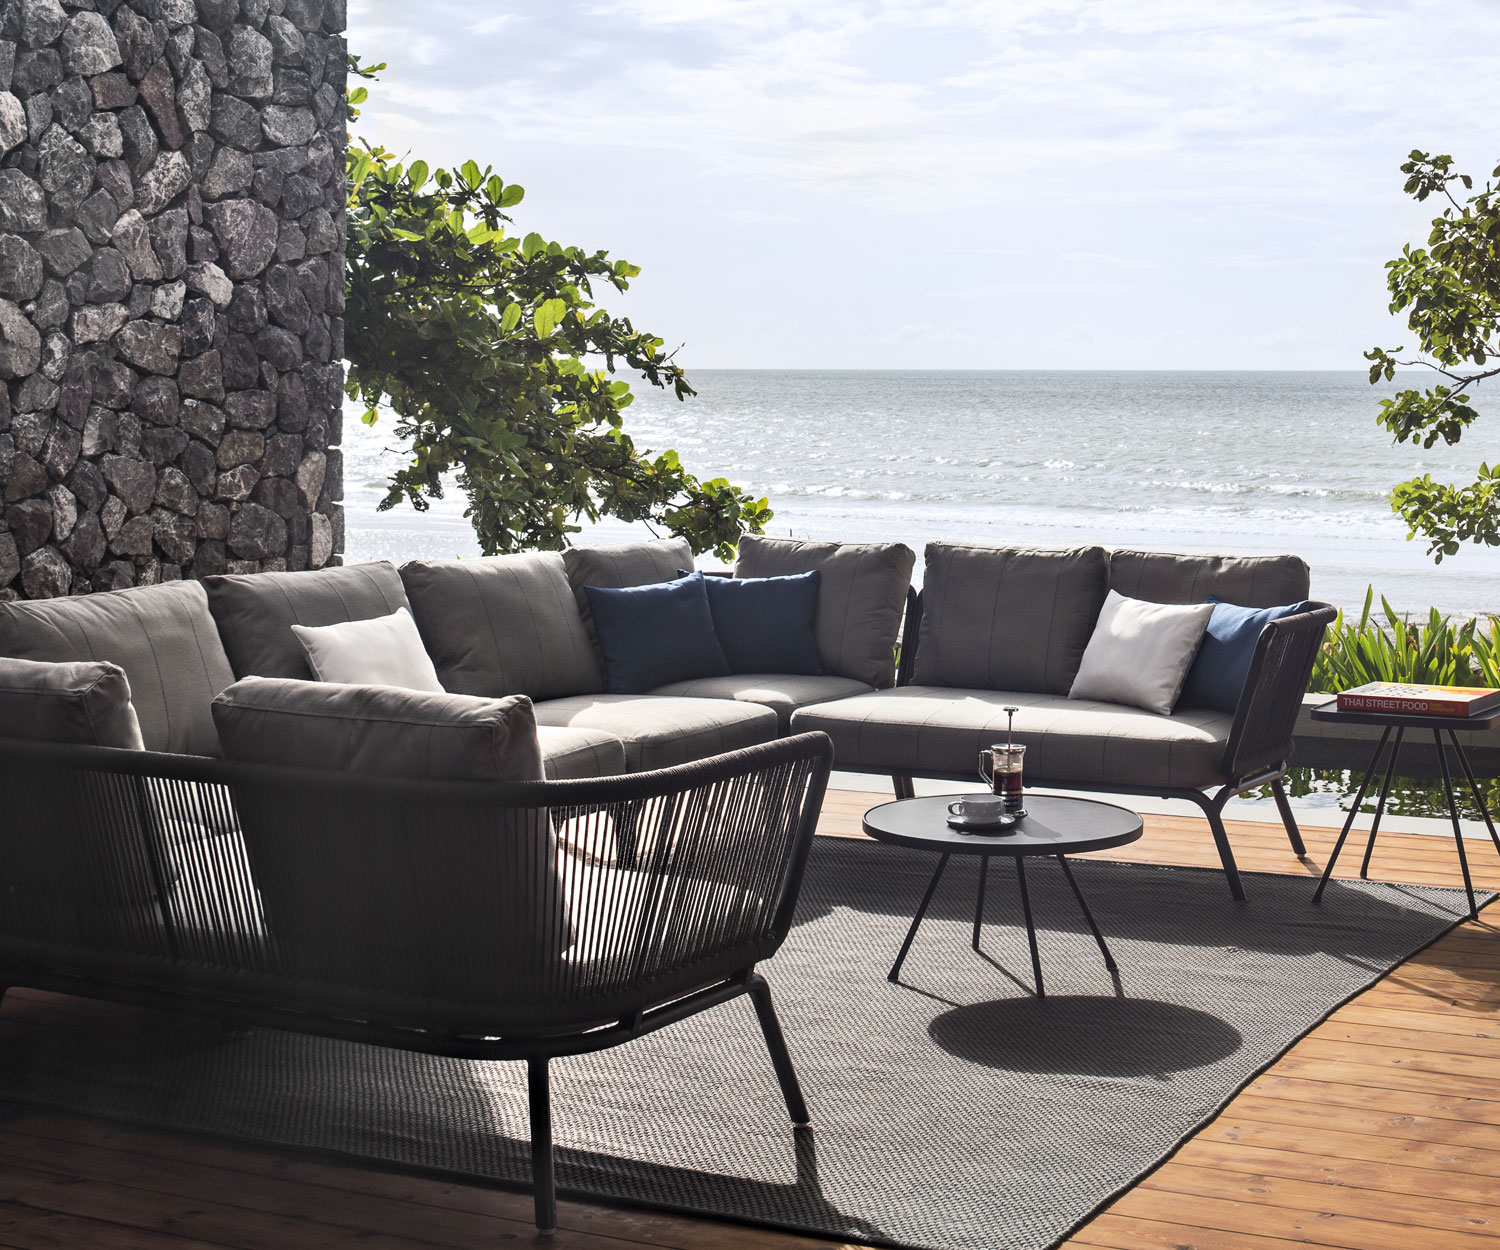 Di alta qualità Oasiq Yland Design Monoposto come parte di un divano da giardino Yland